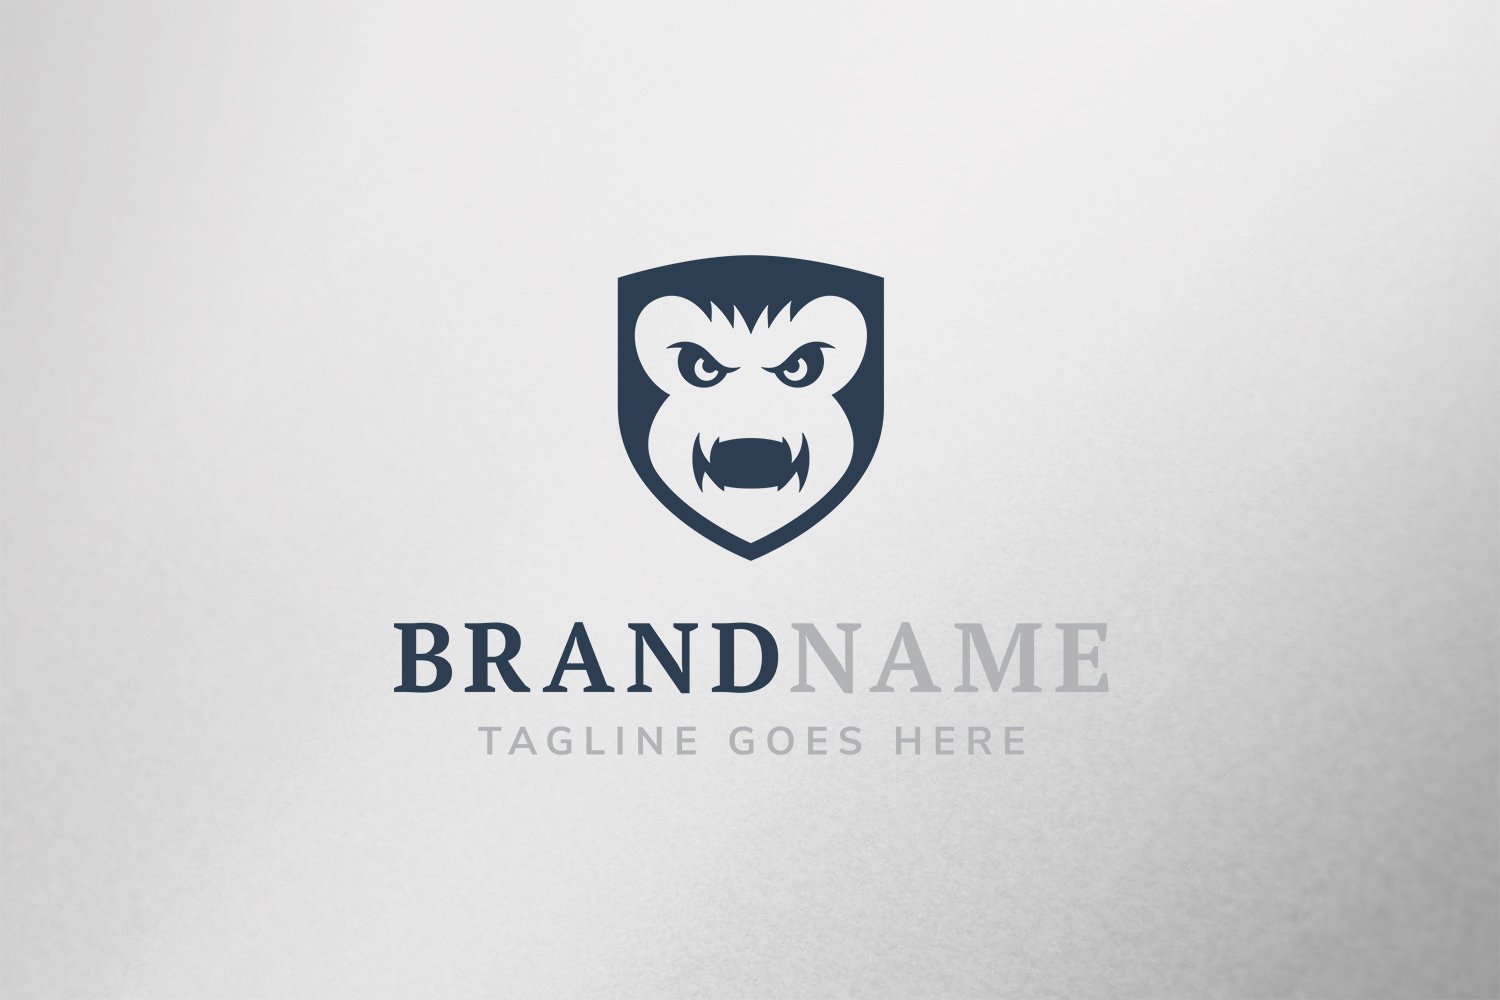 Shield Gorilla Logo cover image.